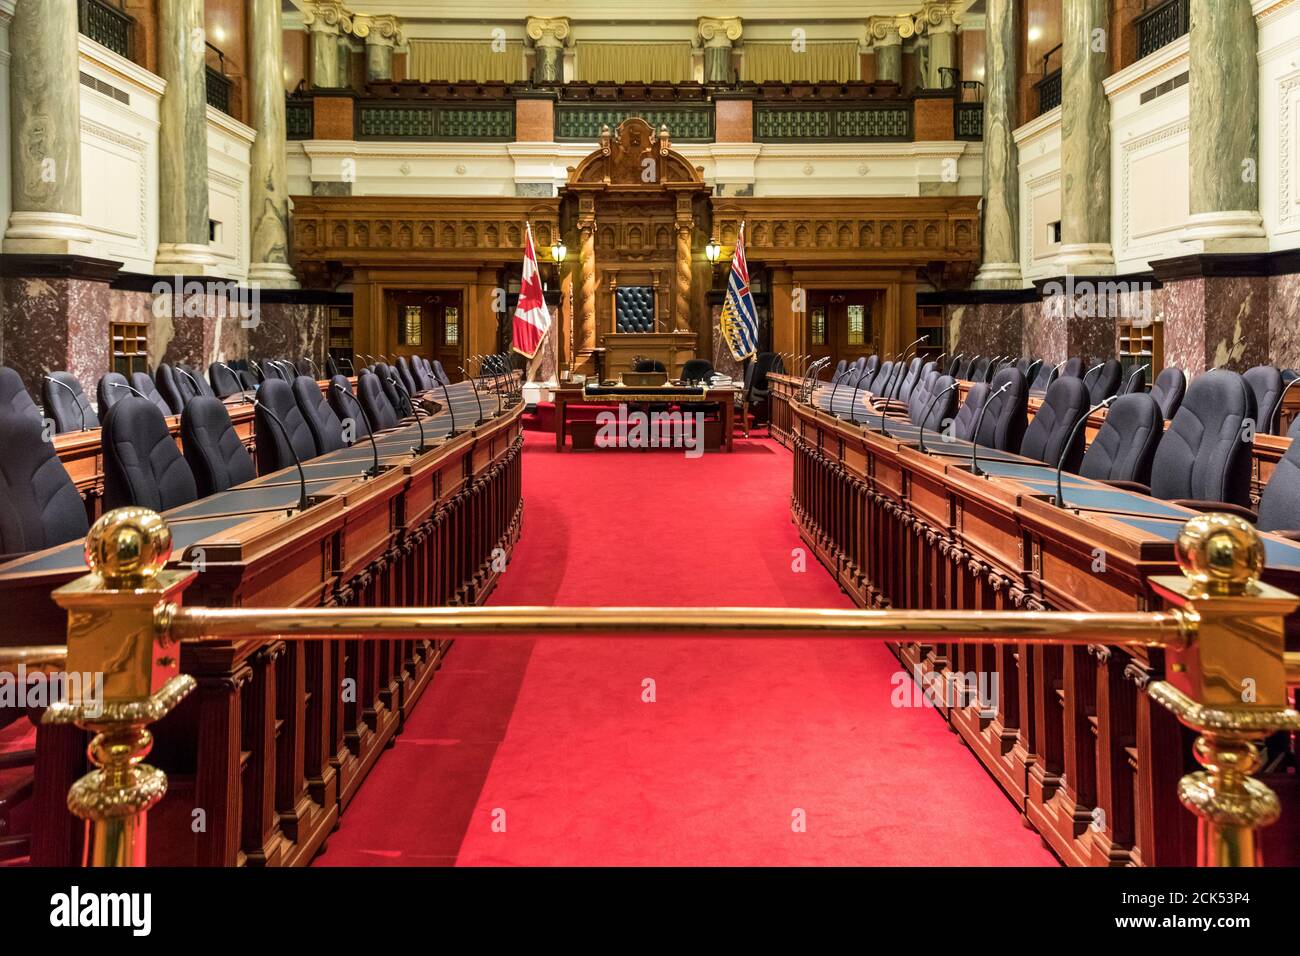 Intérieur de la Chambre législative provinciale de la Colombie-Britannique, à Victoria, C.-B., Canada Banque D'Images